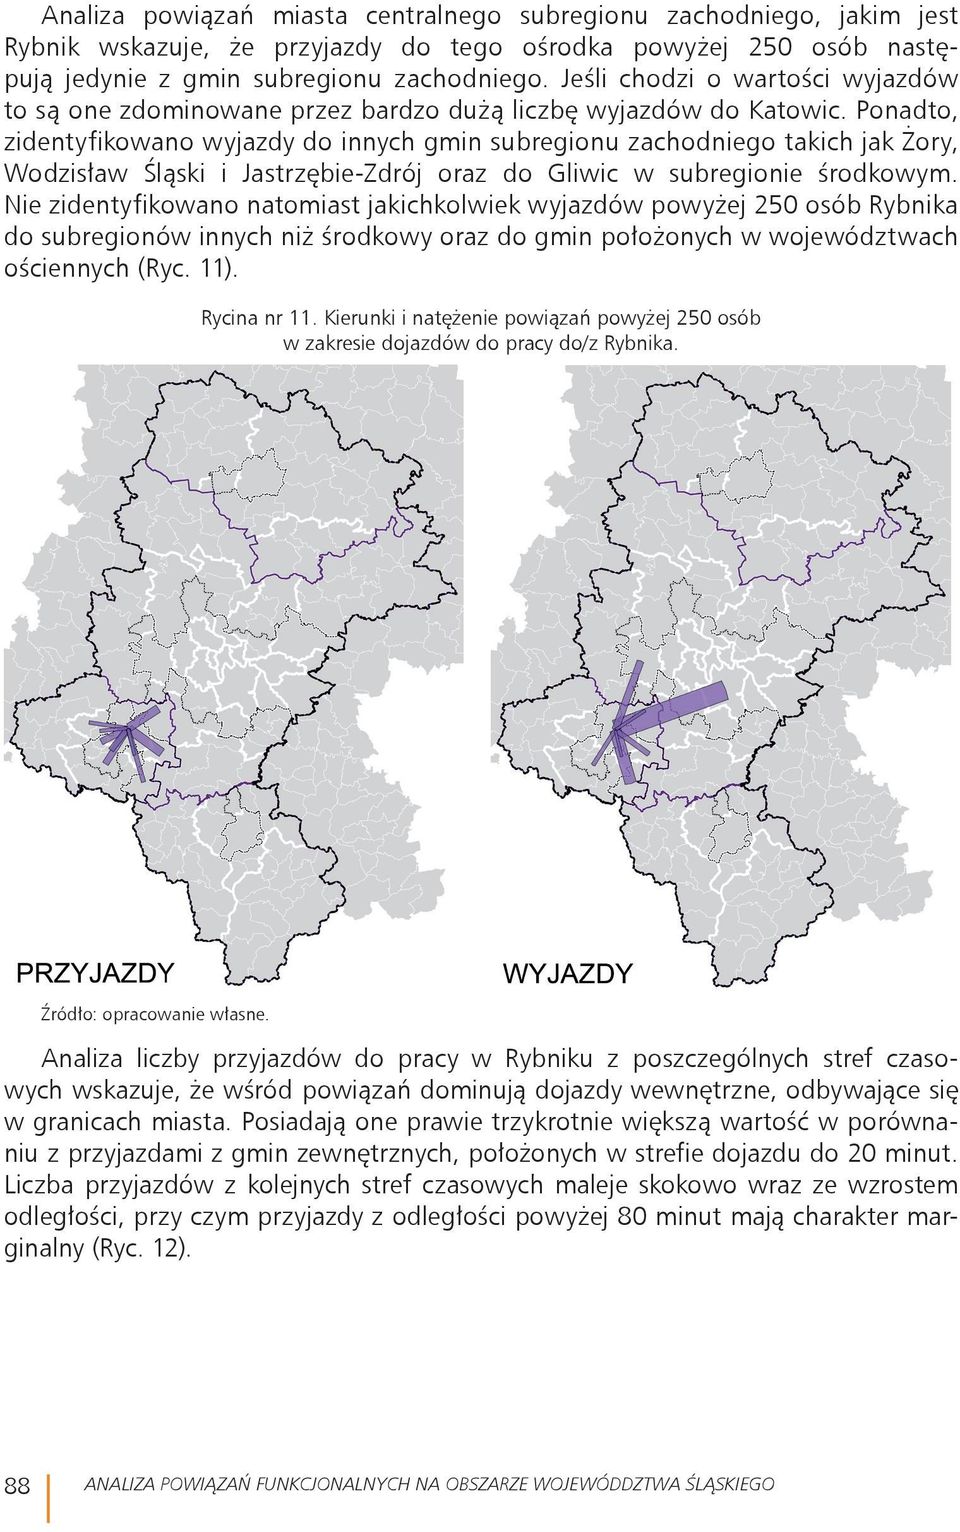 Ponadto, zidentyfikowano wyjazdy do innych gmin subregionu zachodniego takich jak Żory, Wodzisław Śląski i Jastrzębie-Zdrój oraz do Gliwic w subregionie środkowym.